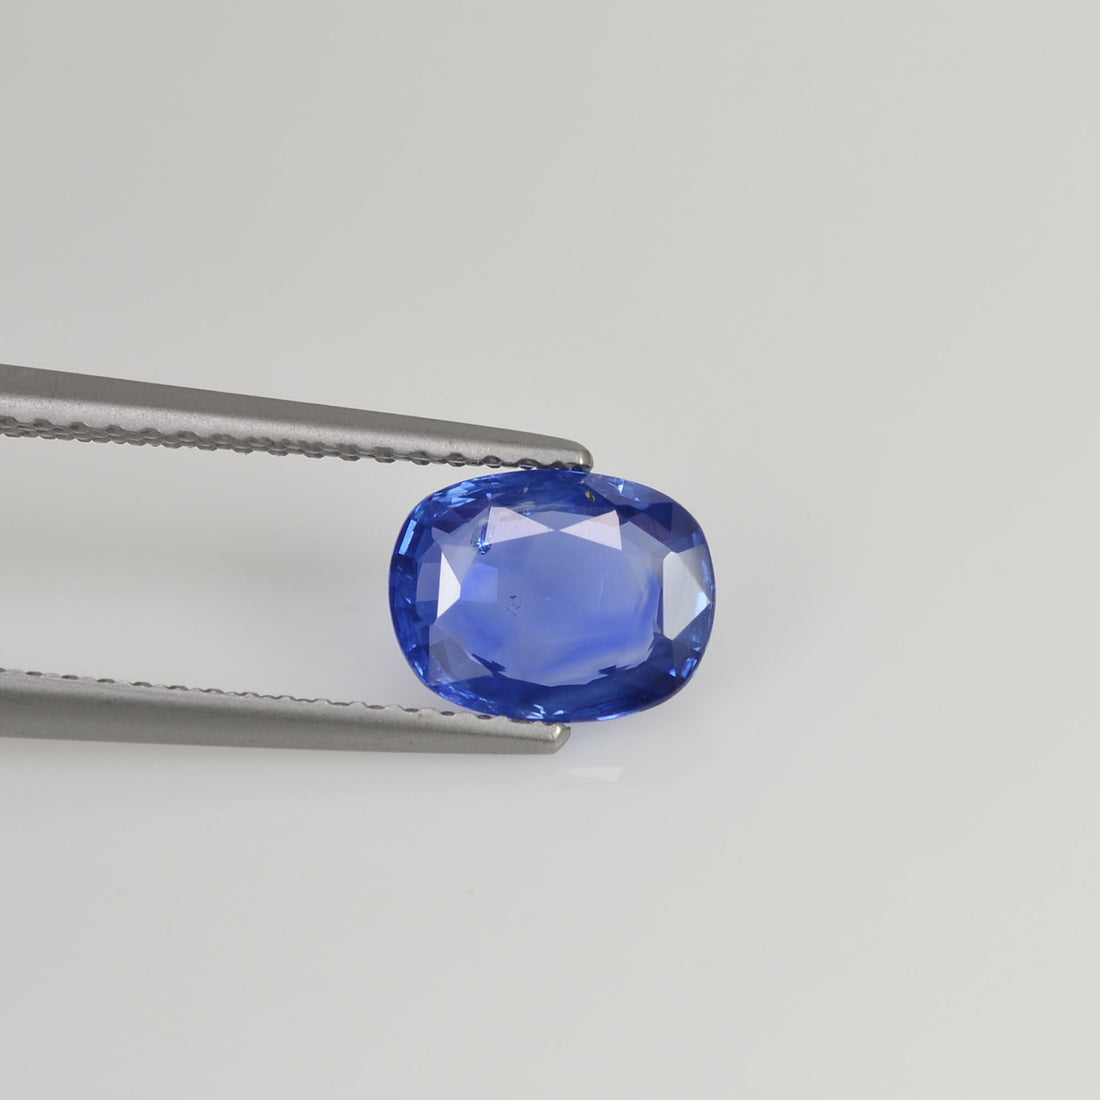 1.45 cts Unheated Natural  Blue Sapphire Loose Gemstone Cushion Cut - Thai Gems Export Ltd.